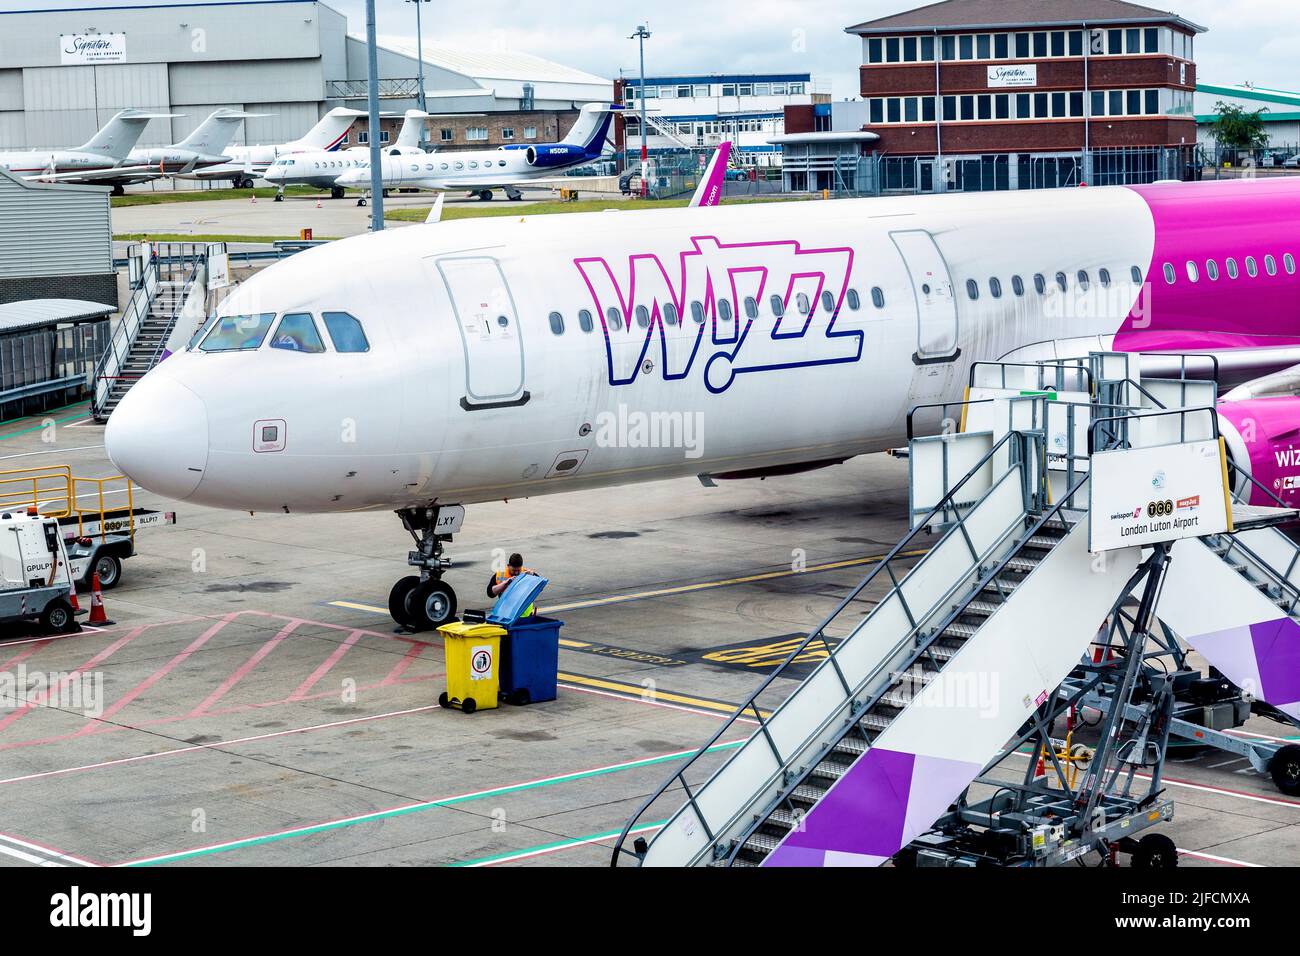 Wizz Air-Flugzeug auf dem Asphalt am Flughafen Luton, Luton, London, Großbritannien Stockfoto